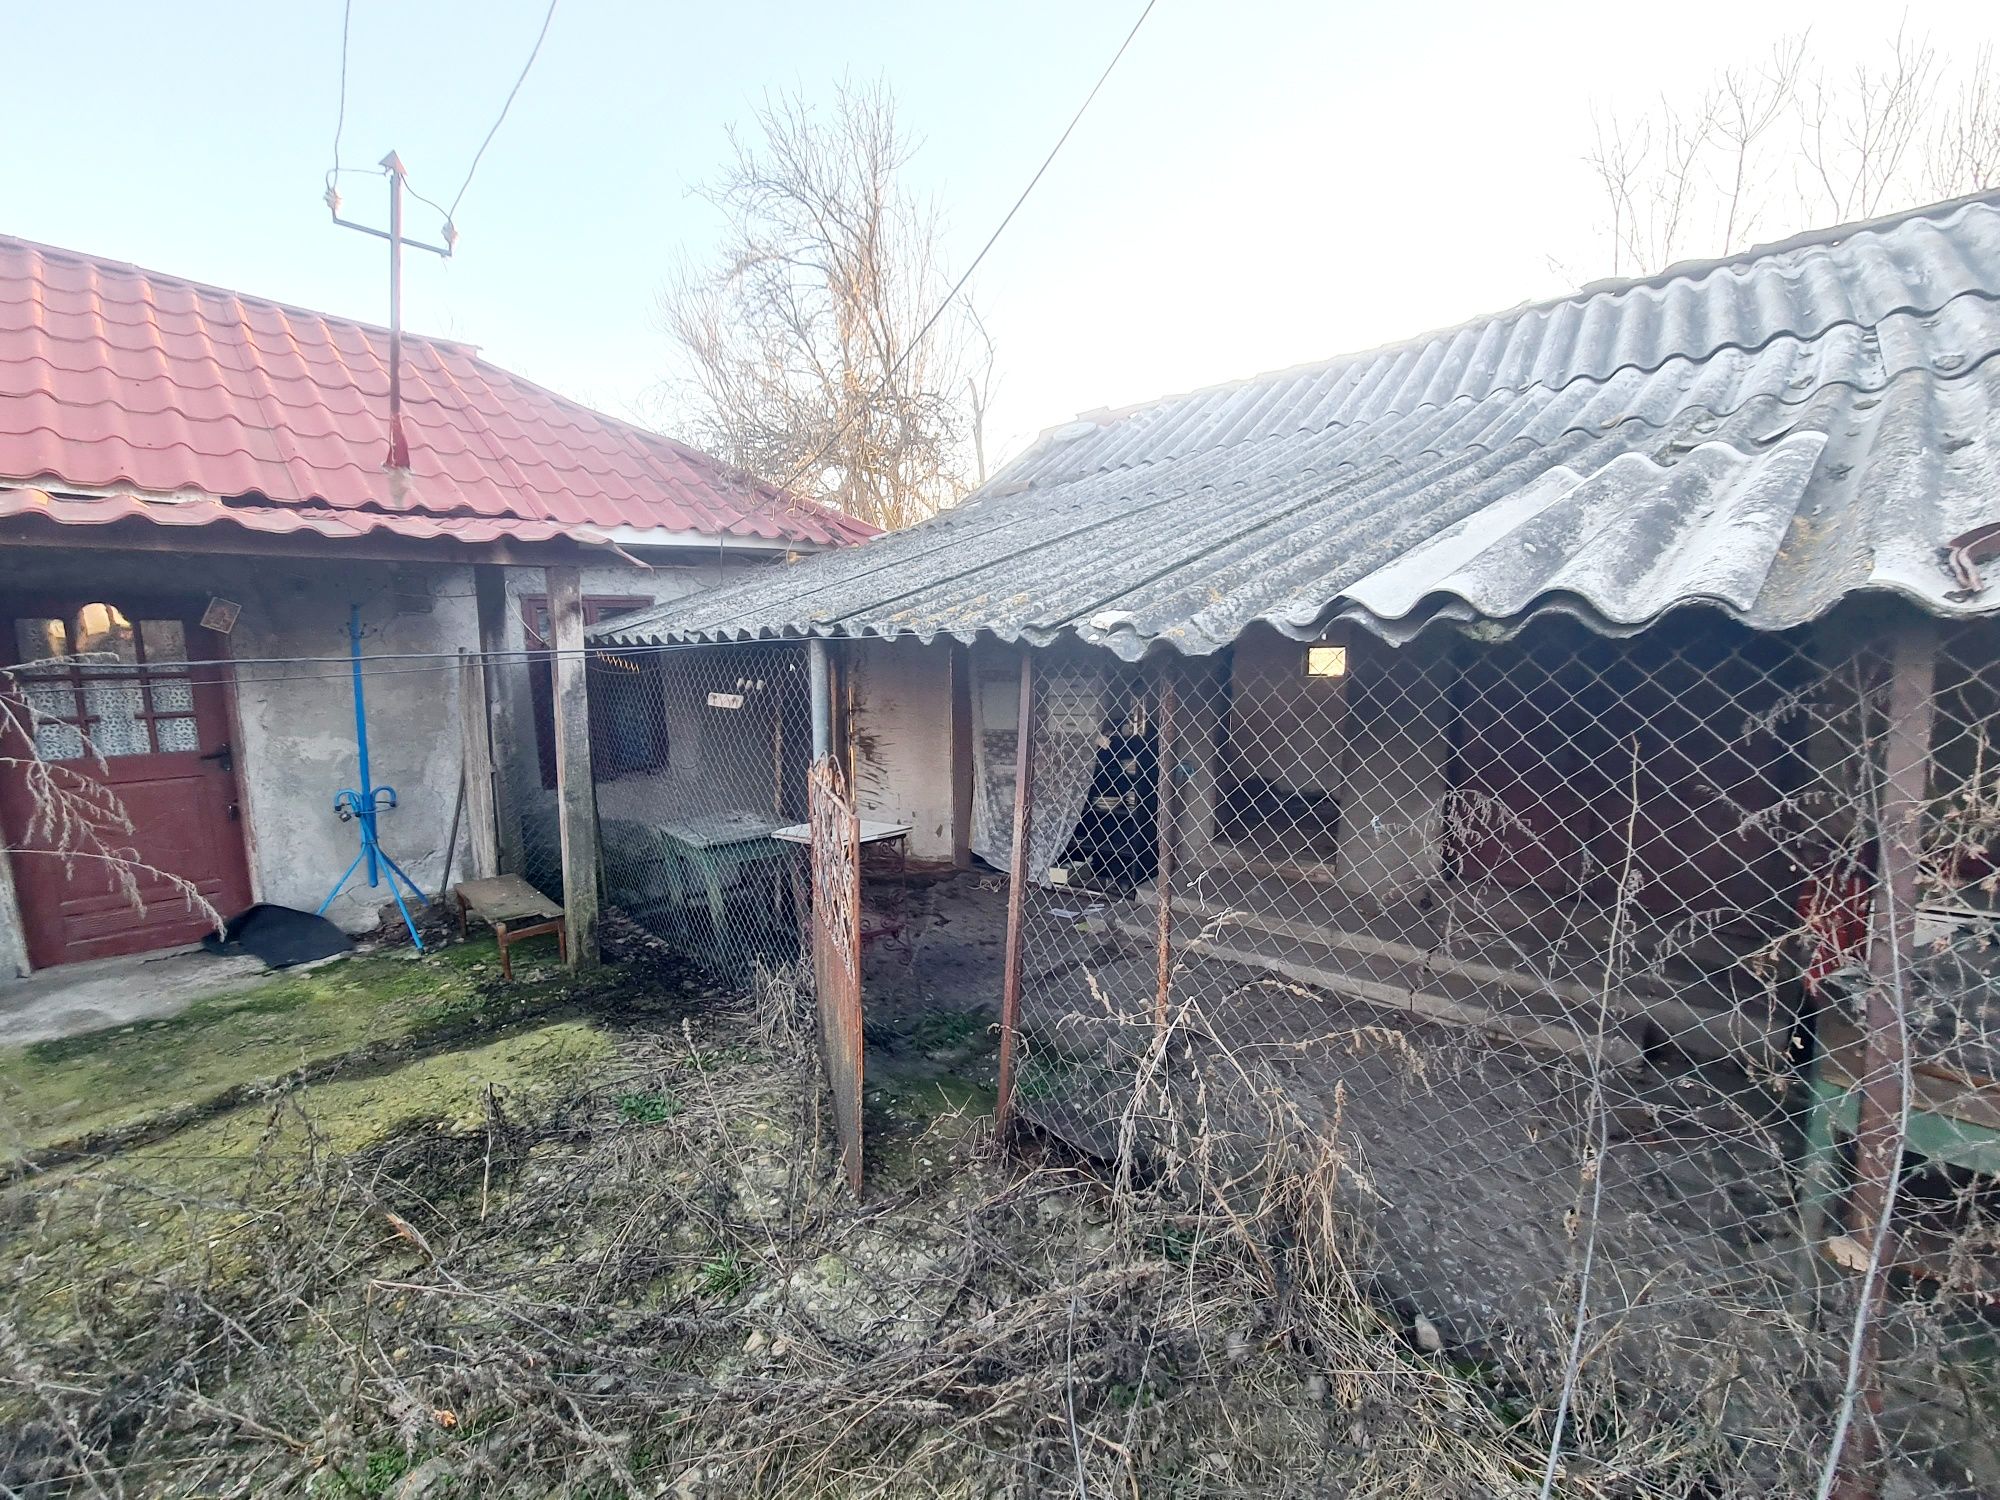 Vand casa batraneasca la tara , 30km de Craiova